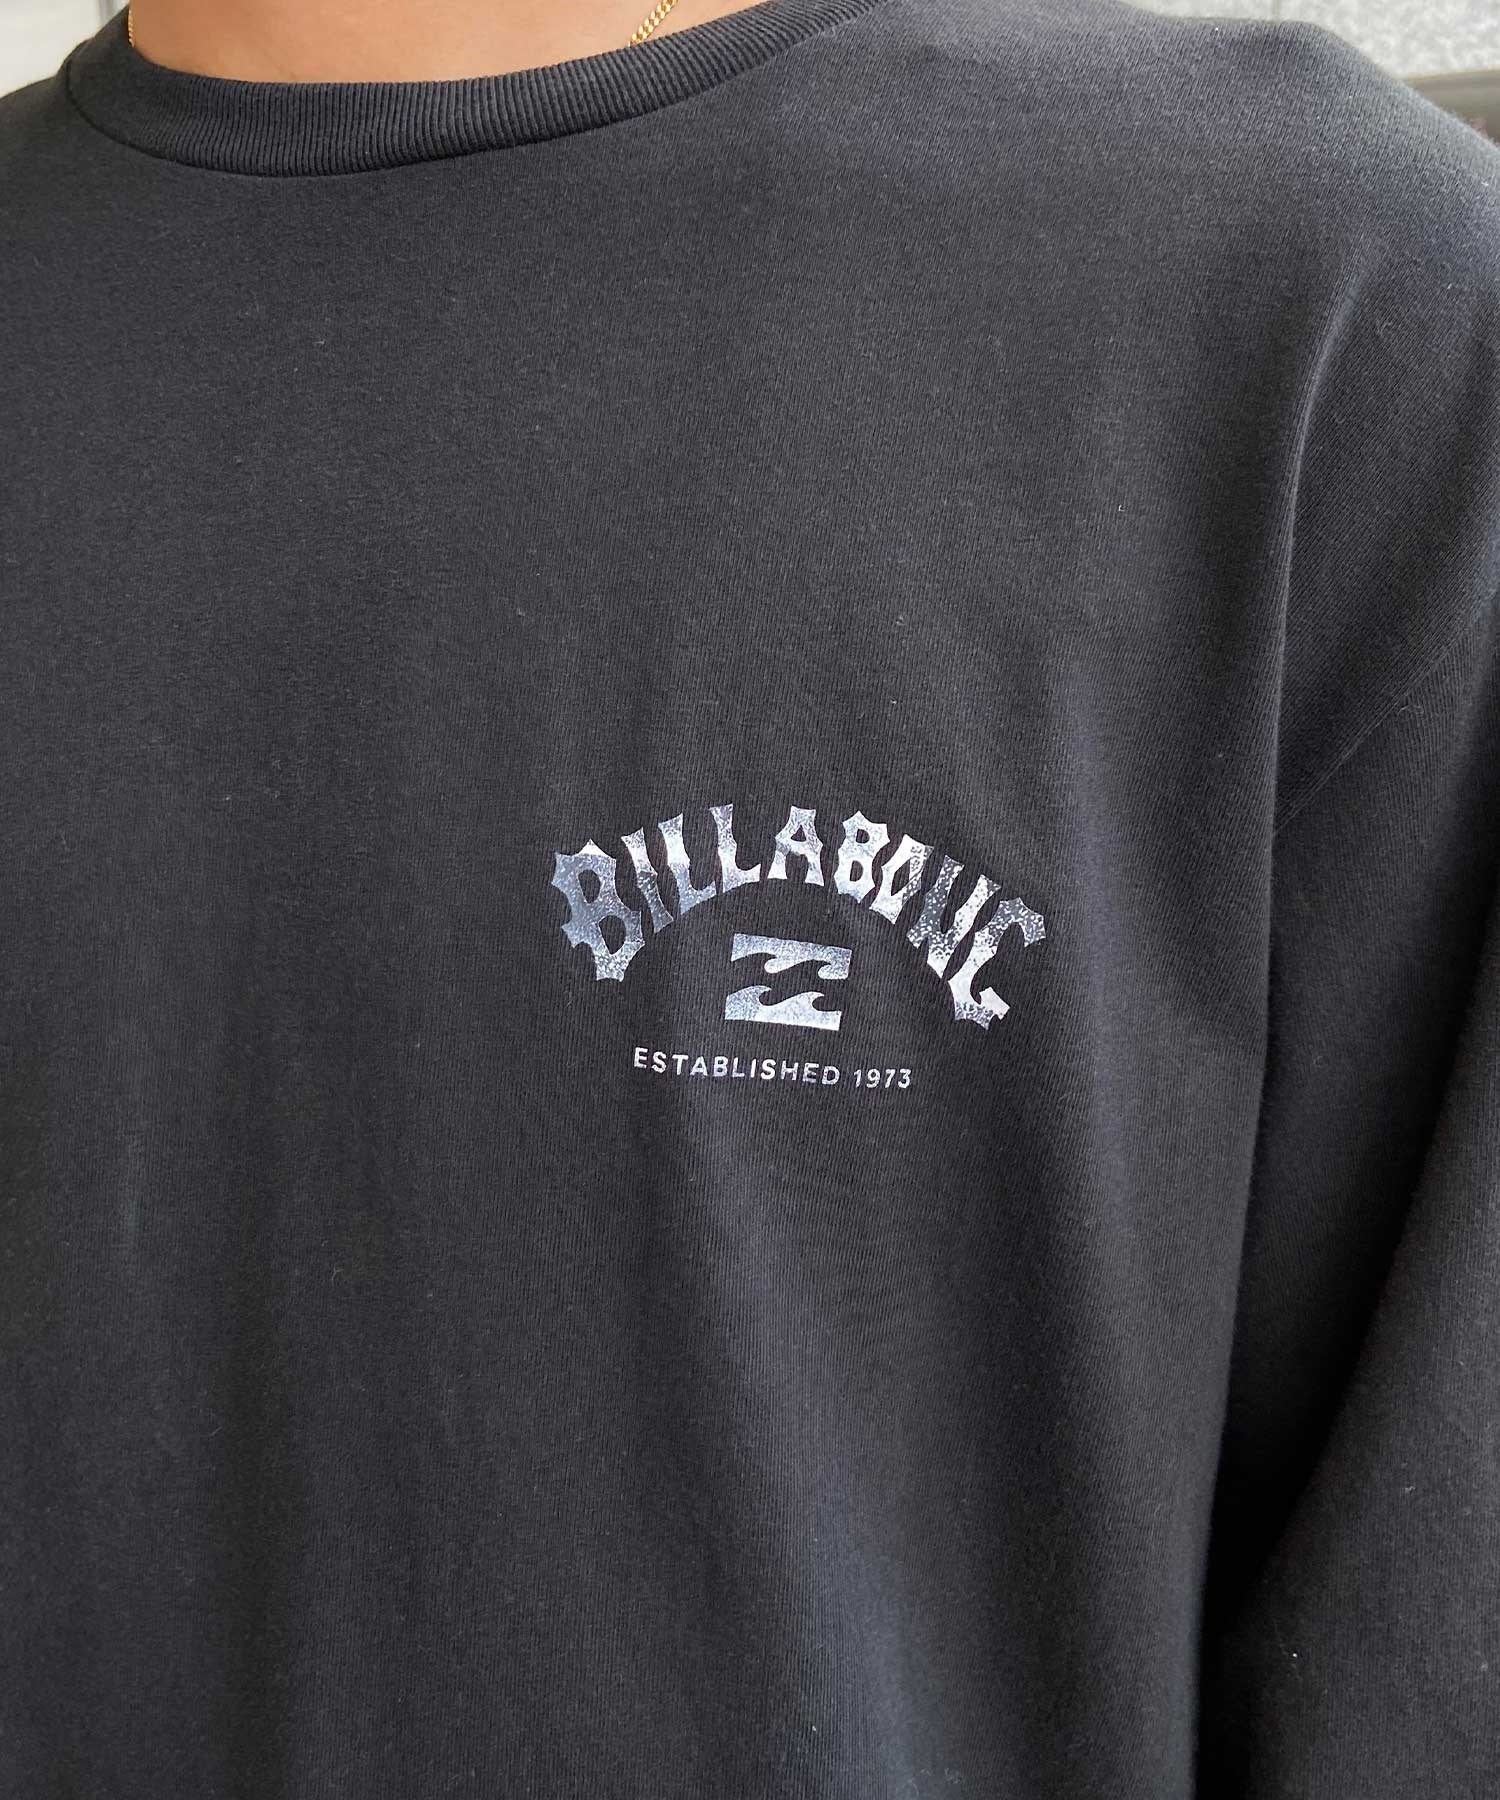 BILLABONG ビラボン BE011-050 メンズ 長袖 Tシャツ ロゴ ロンT バックプリント クルーネックロンT(OFW-M)